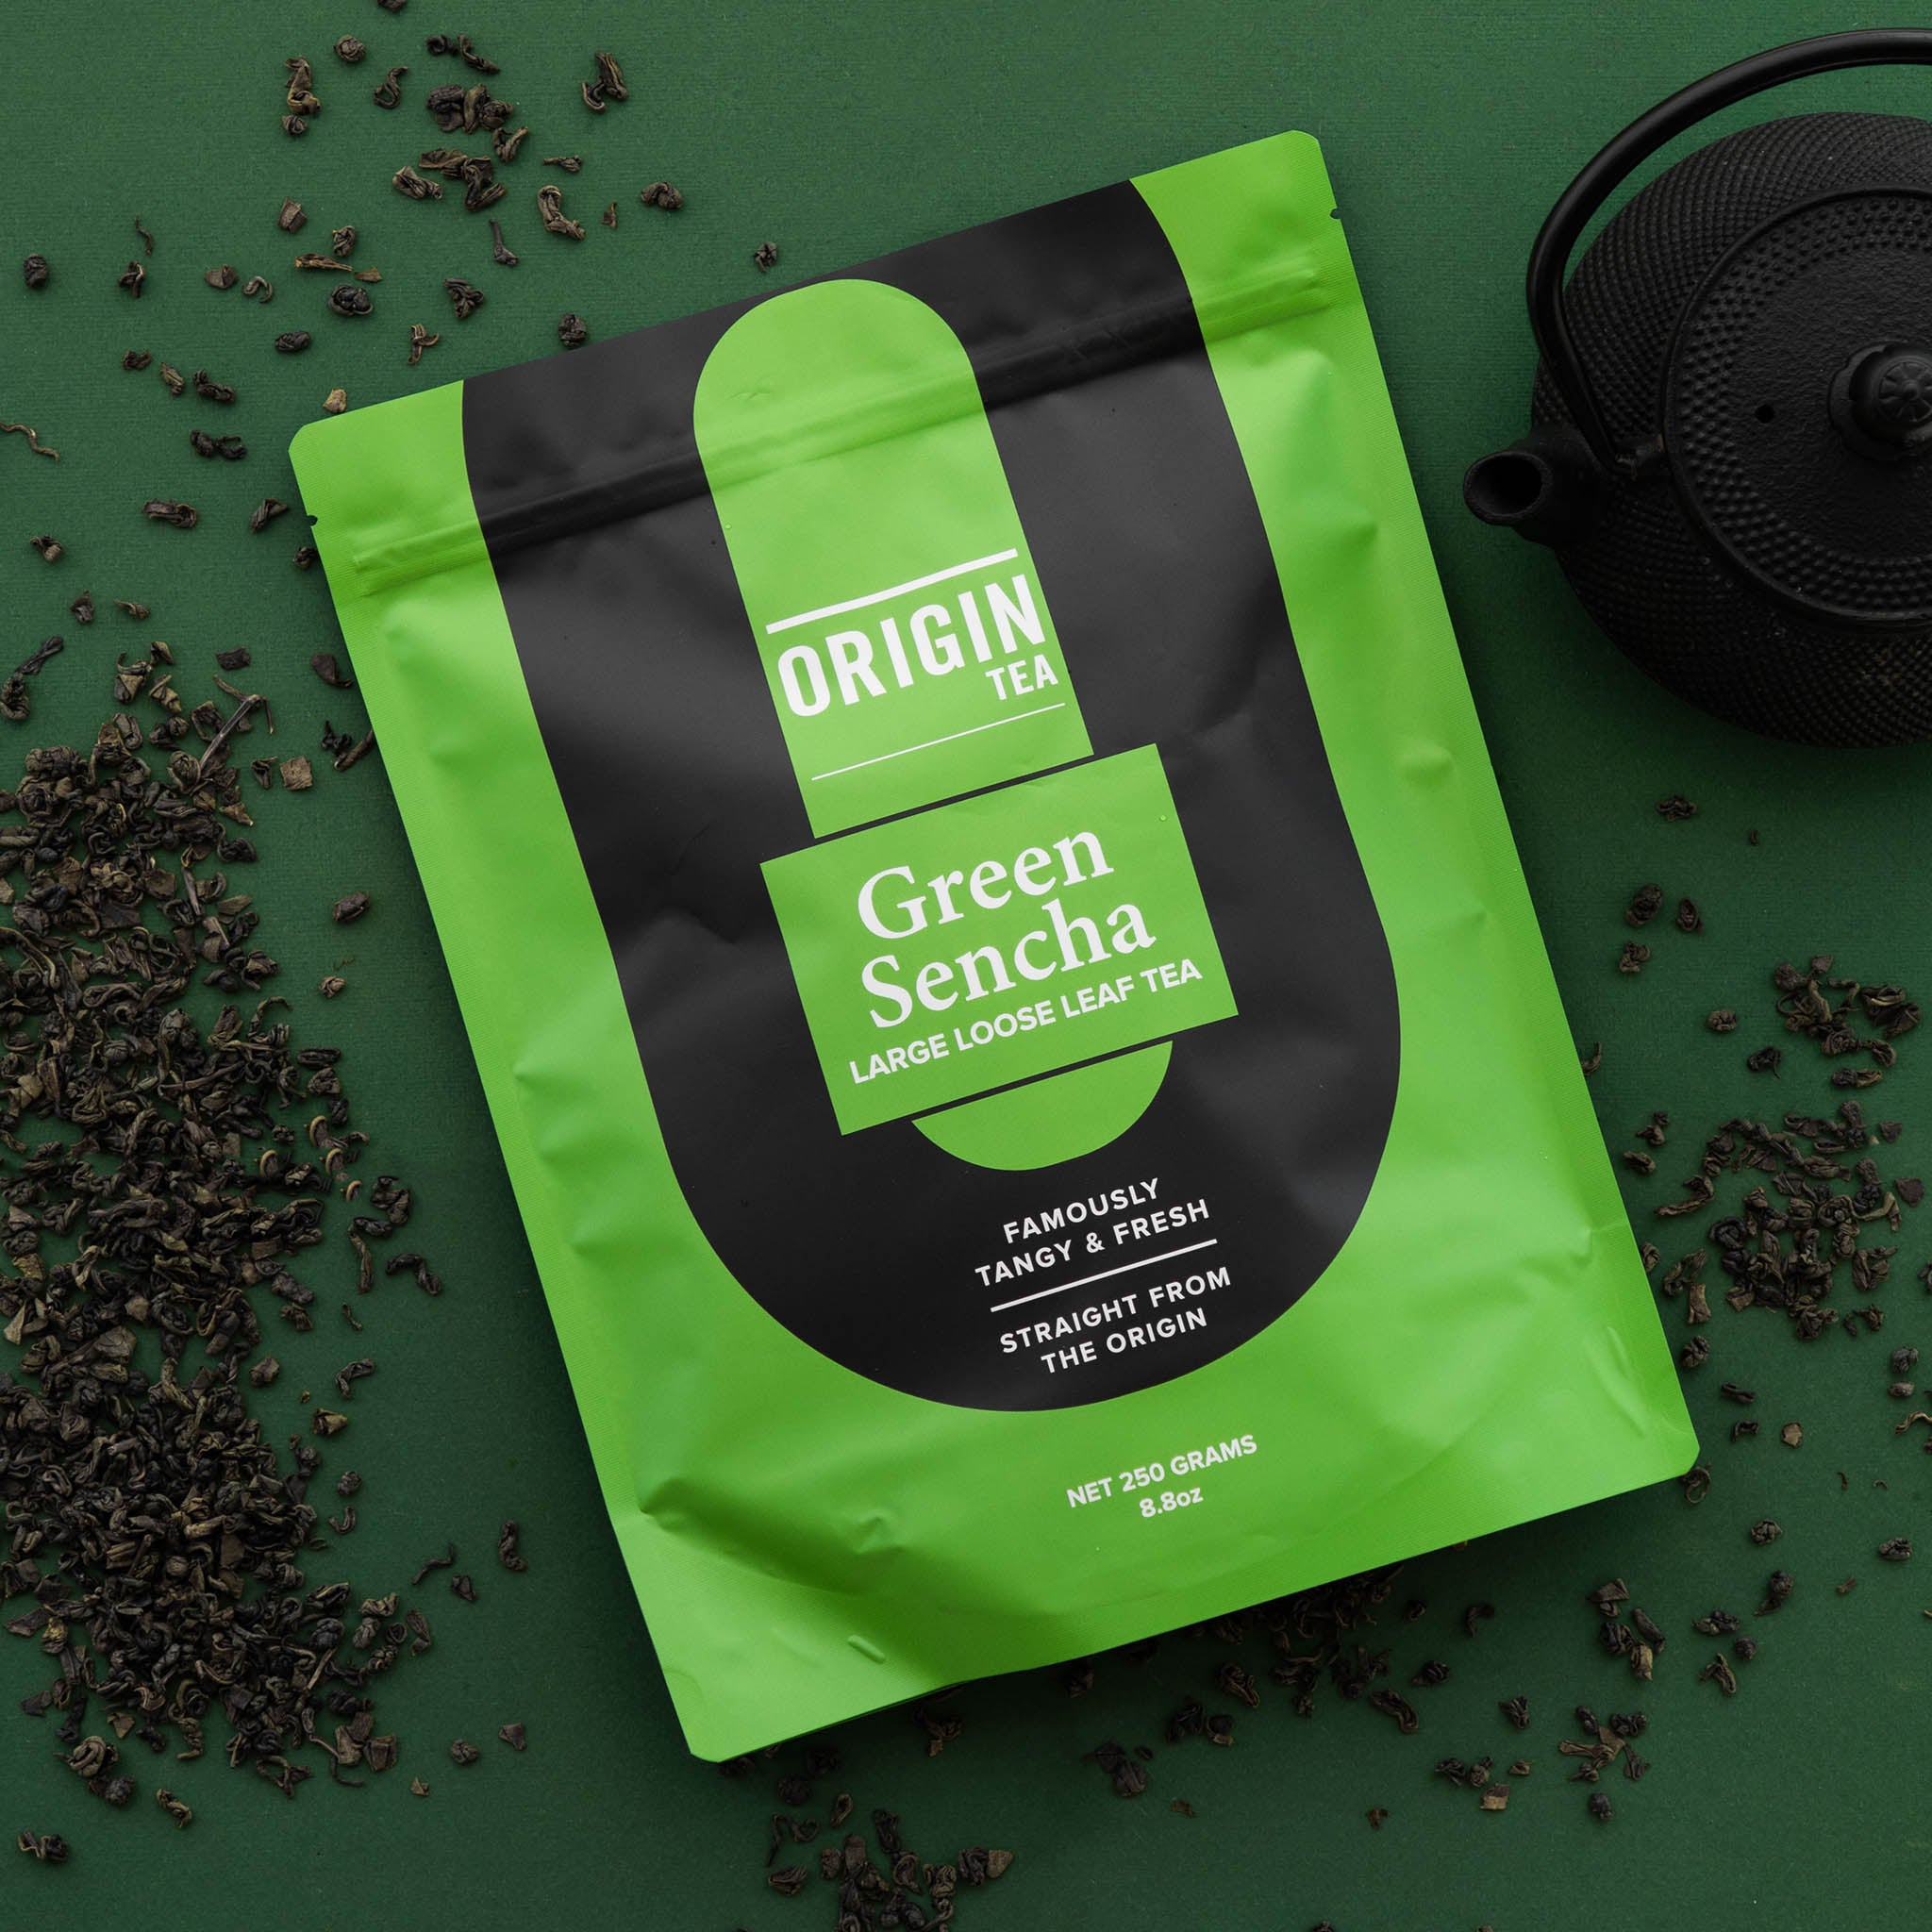 Green Sencha Loose Leaf Green Tea - 250g - Origin Tea